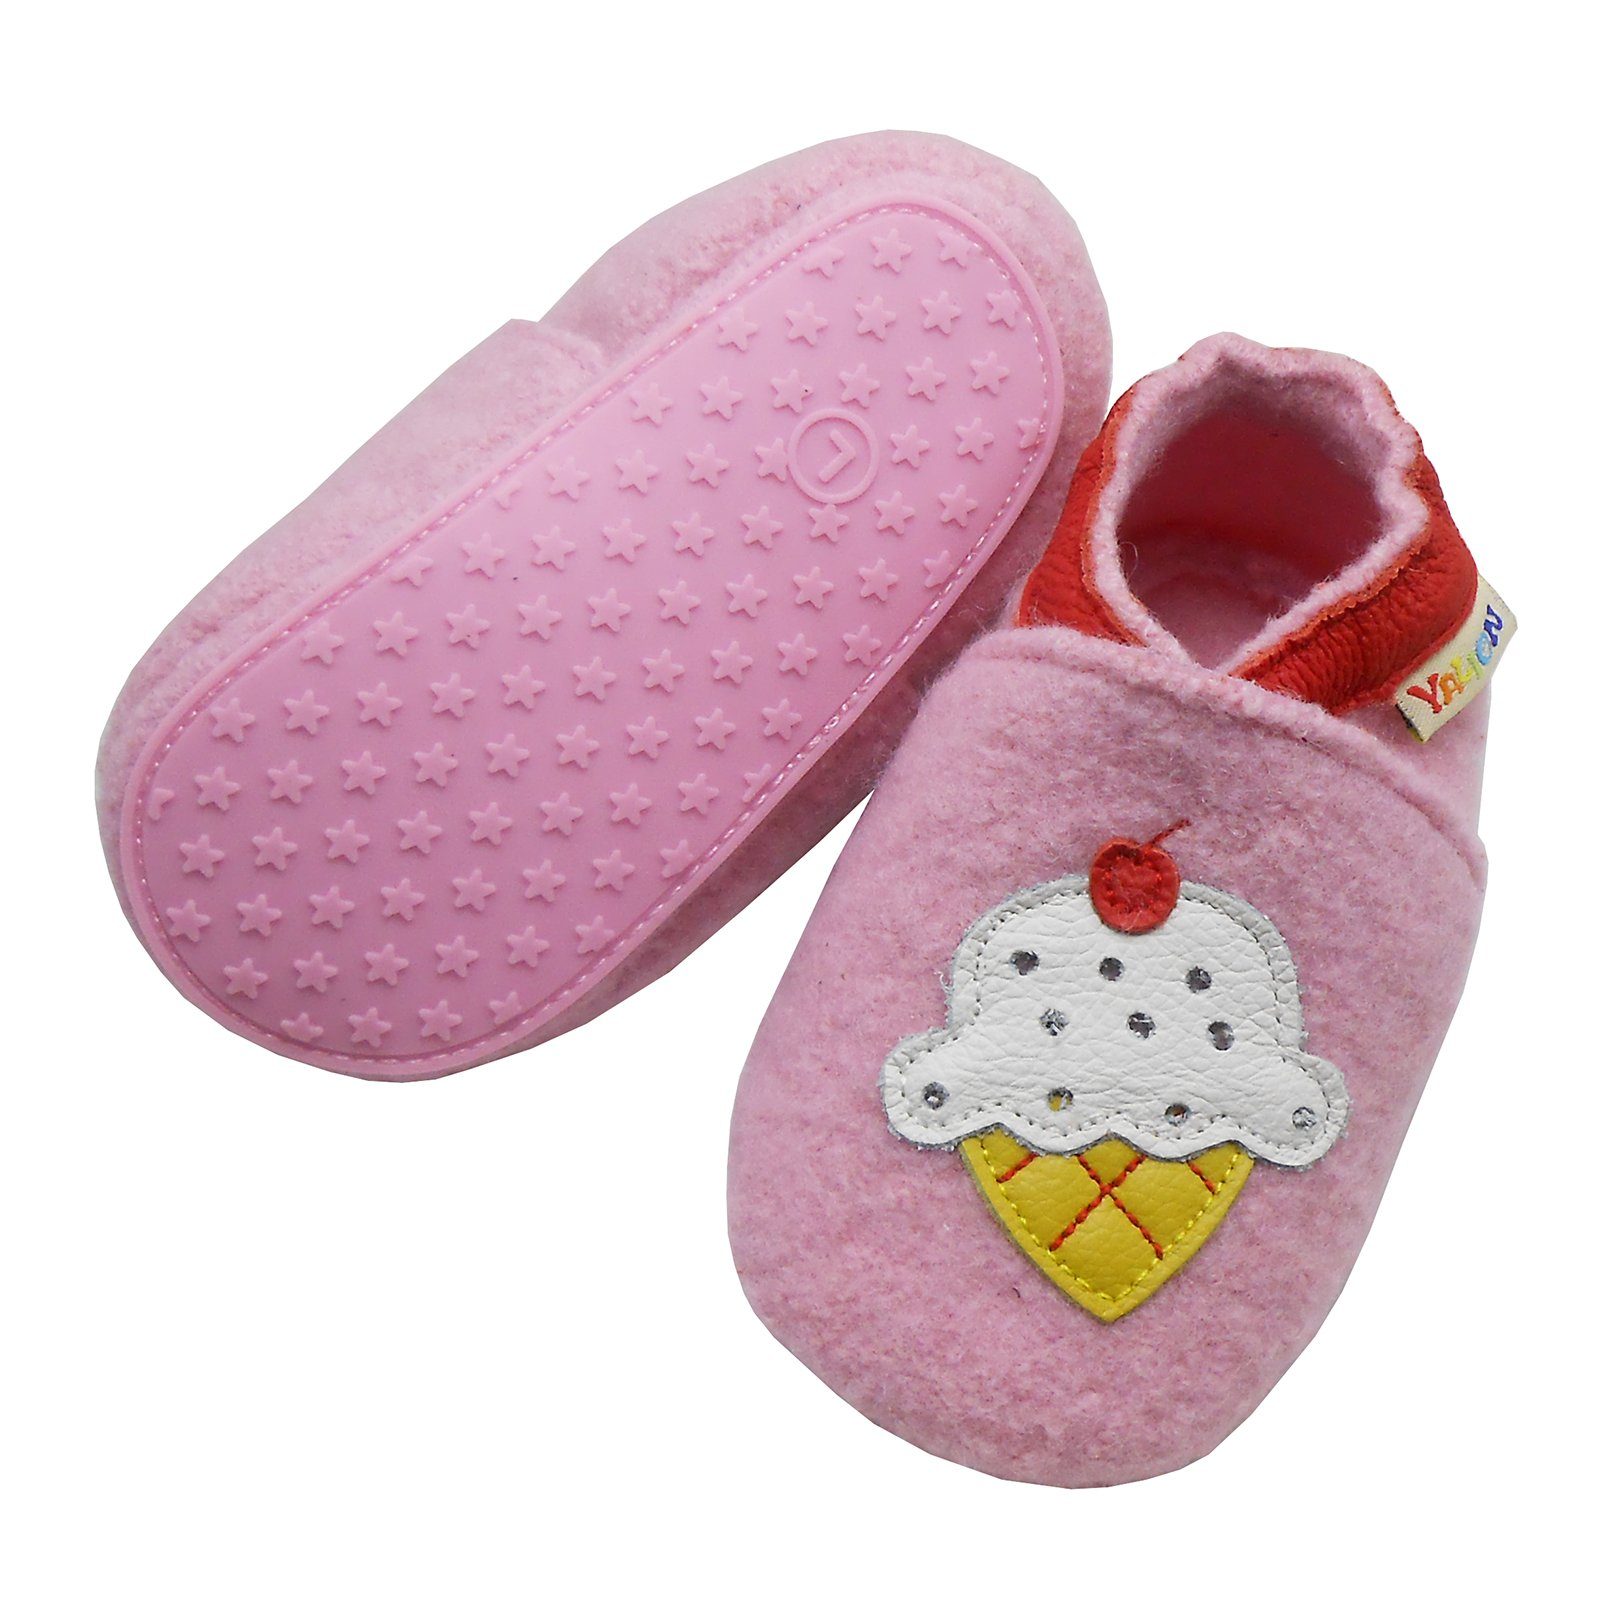 Yalion »Schuhe Kinder Anti Schweiß Krabbelschuh Filz Hausschuhe aus 100%  Schafwolle, Erdbeer Rosa, können als Krabbelschuhe, Hausschuhe,  Lauflernschuhe, Turnschuhe« Krabbelschuh online kaufen | OTTO